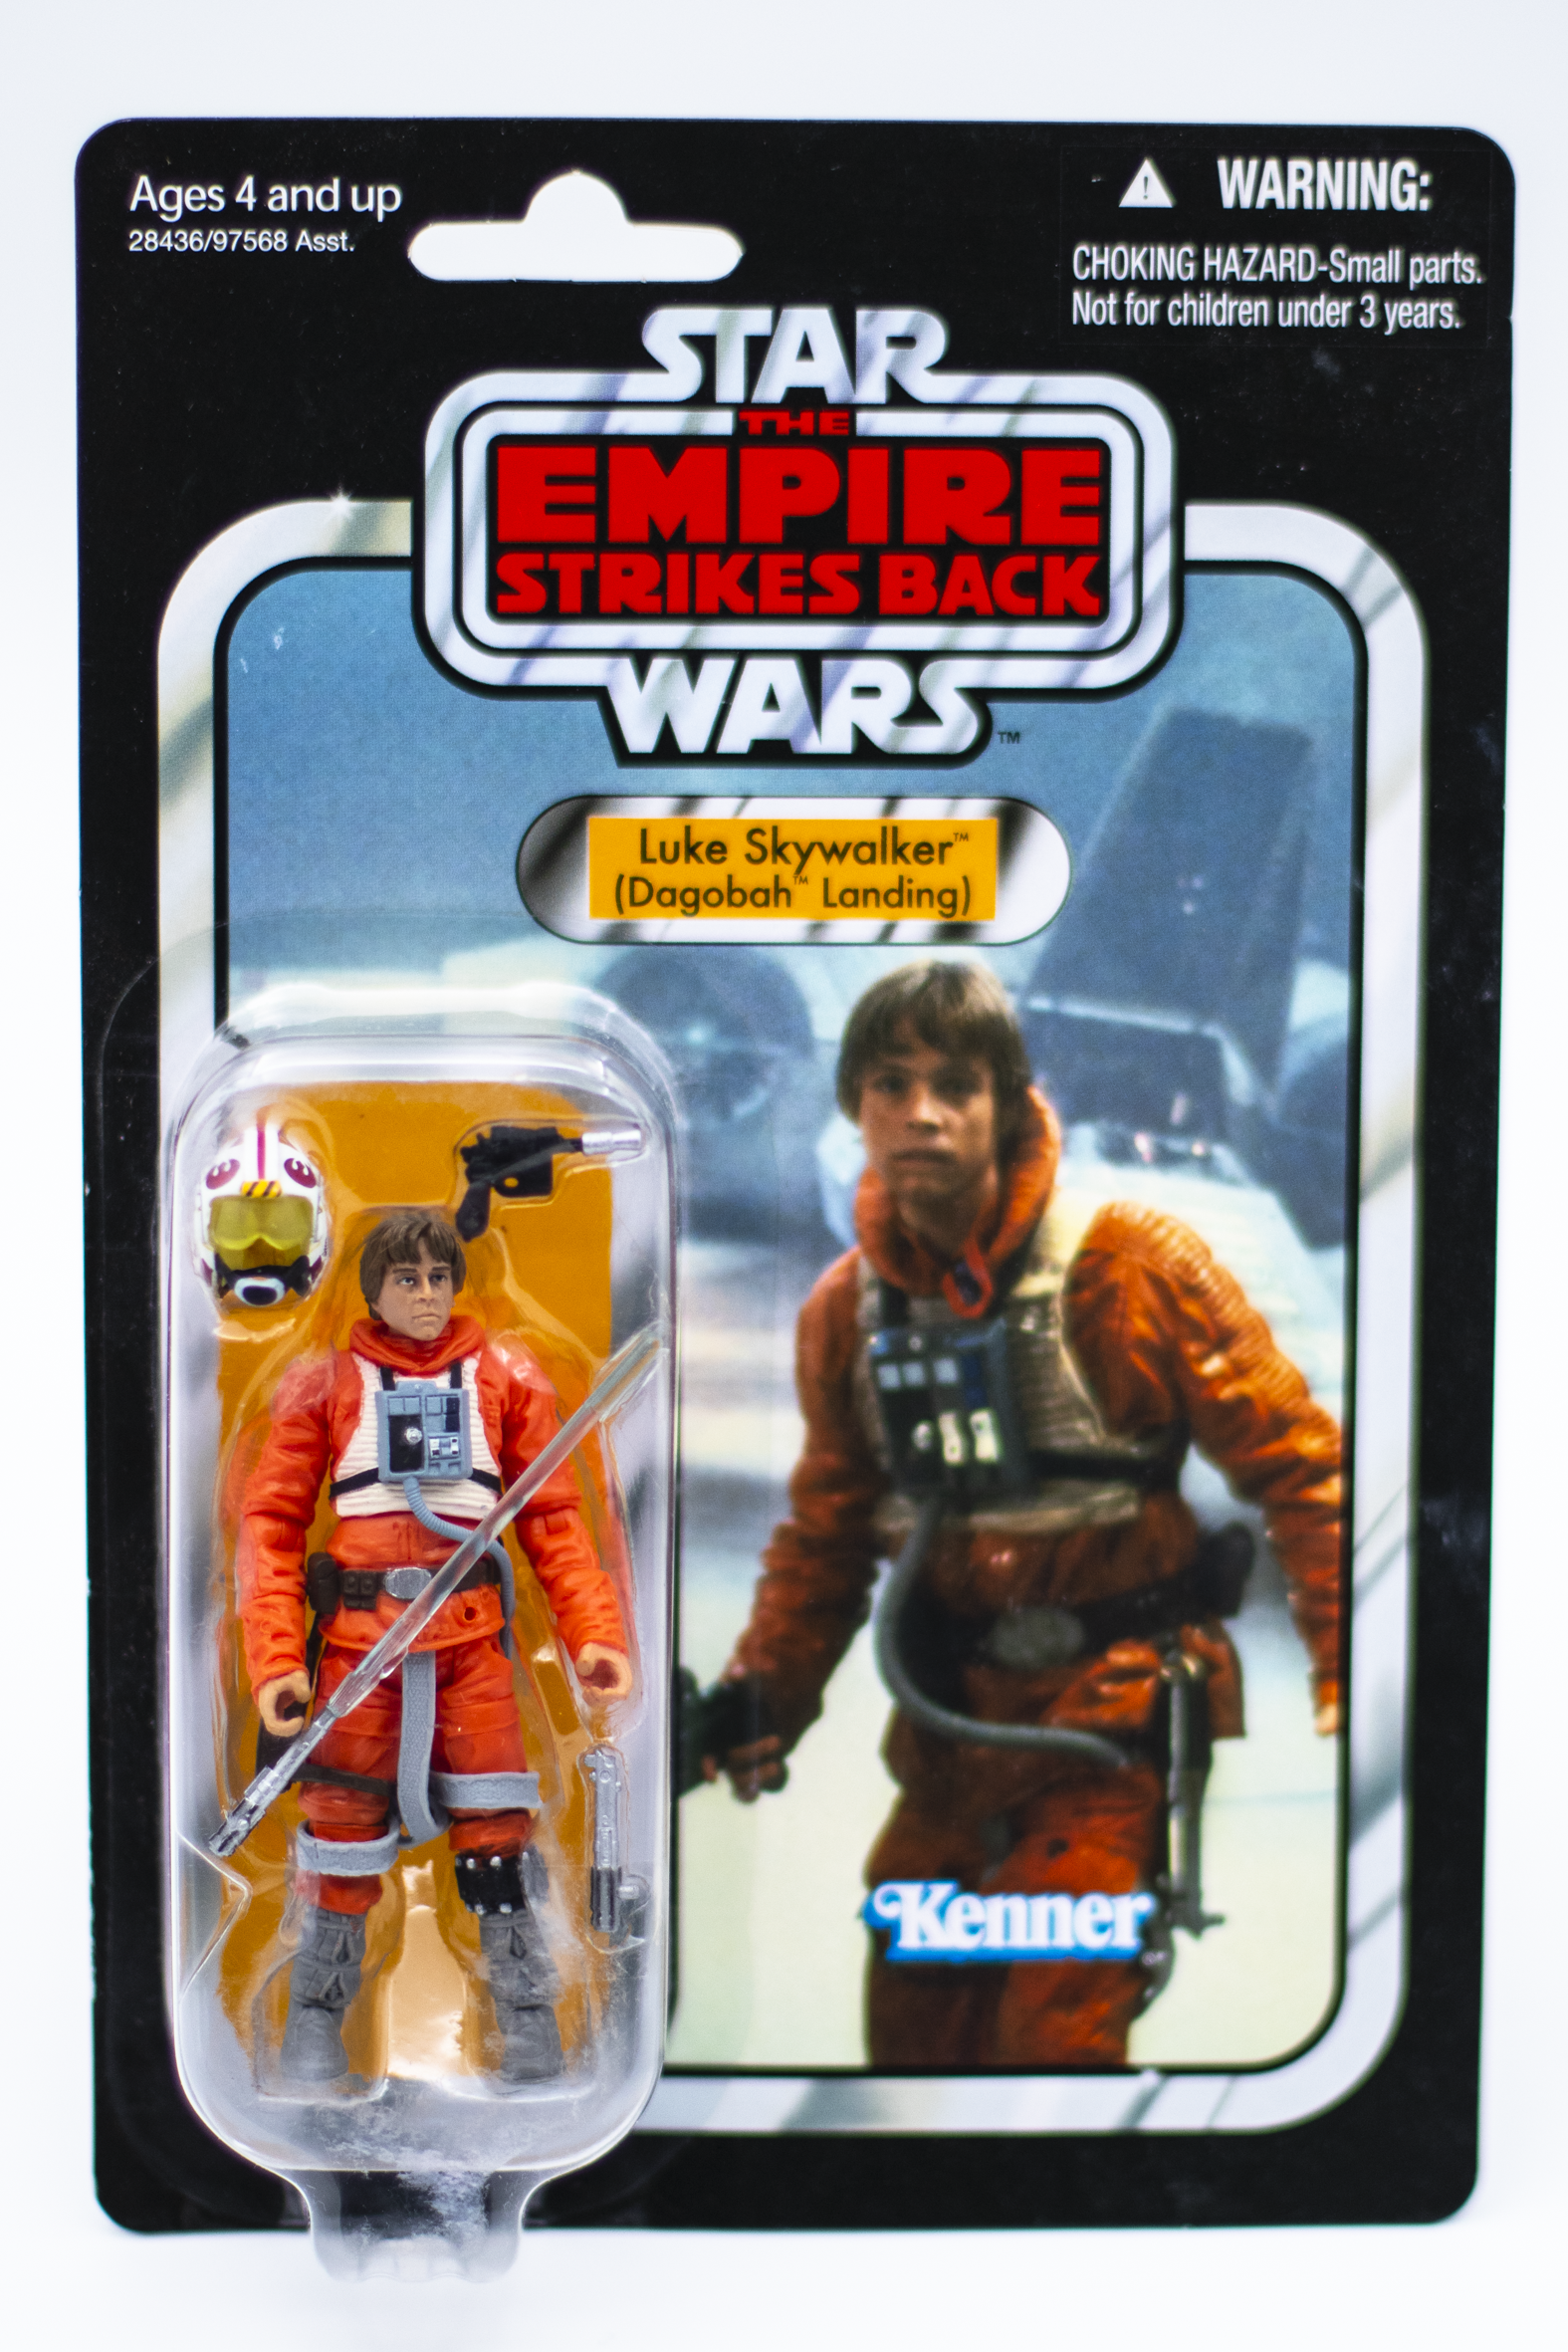 Star Wars: The Empire Strikes Back "Luke Skywalker (Dagobah Landing)" VC44